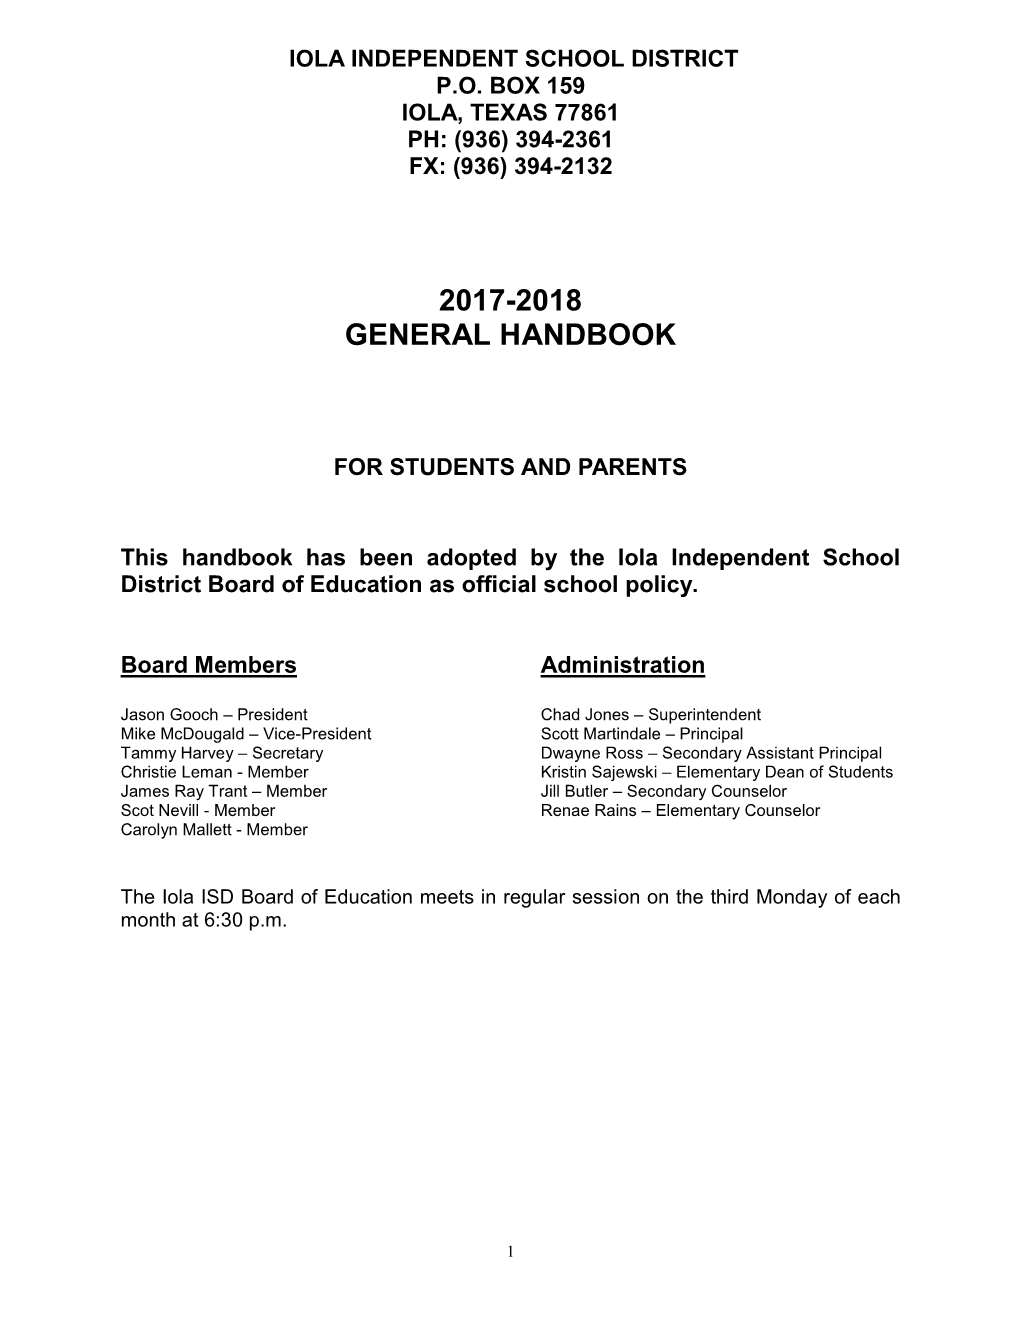 TASB Model Student Handbook